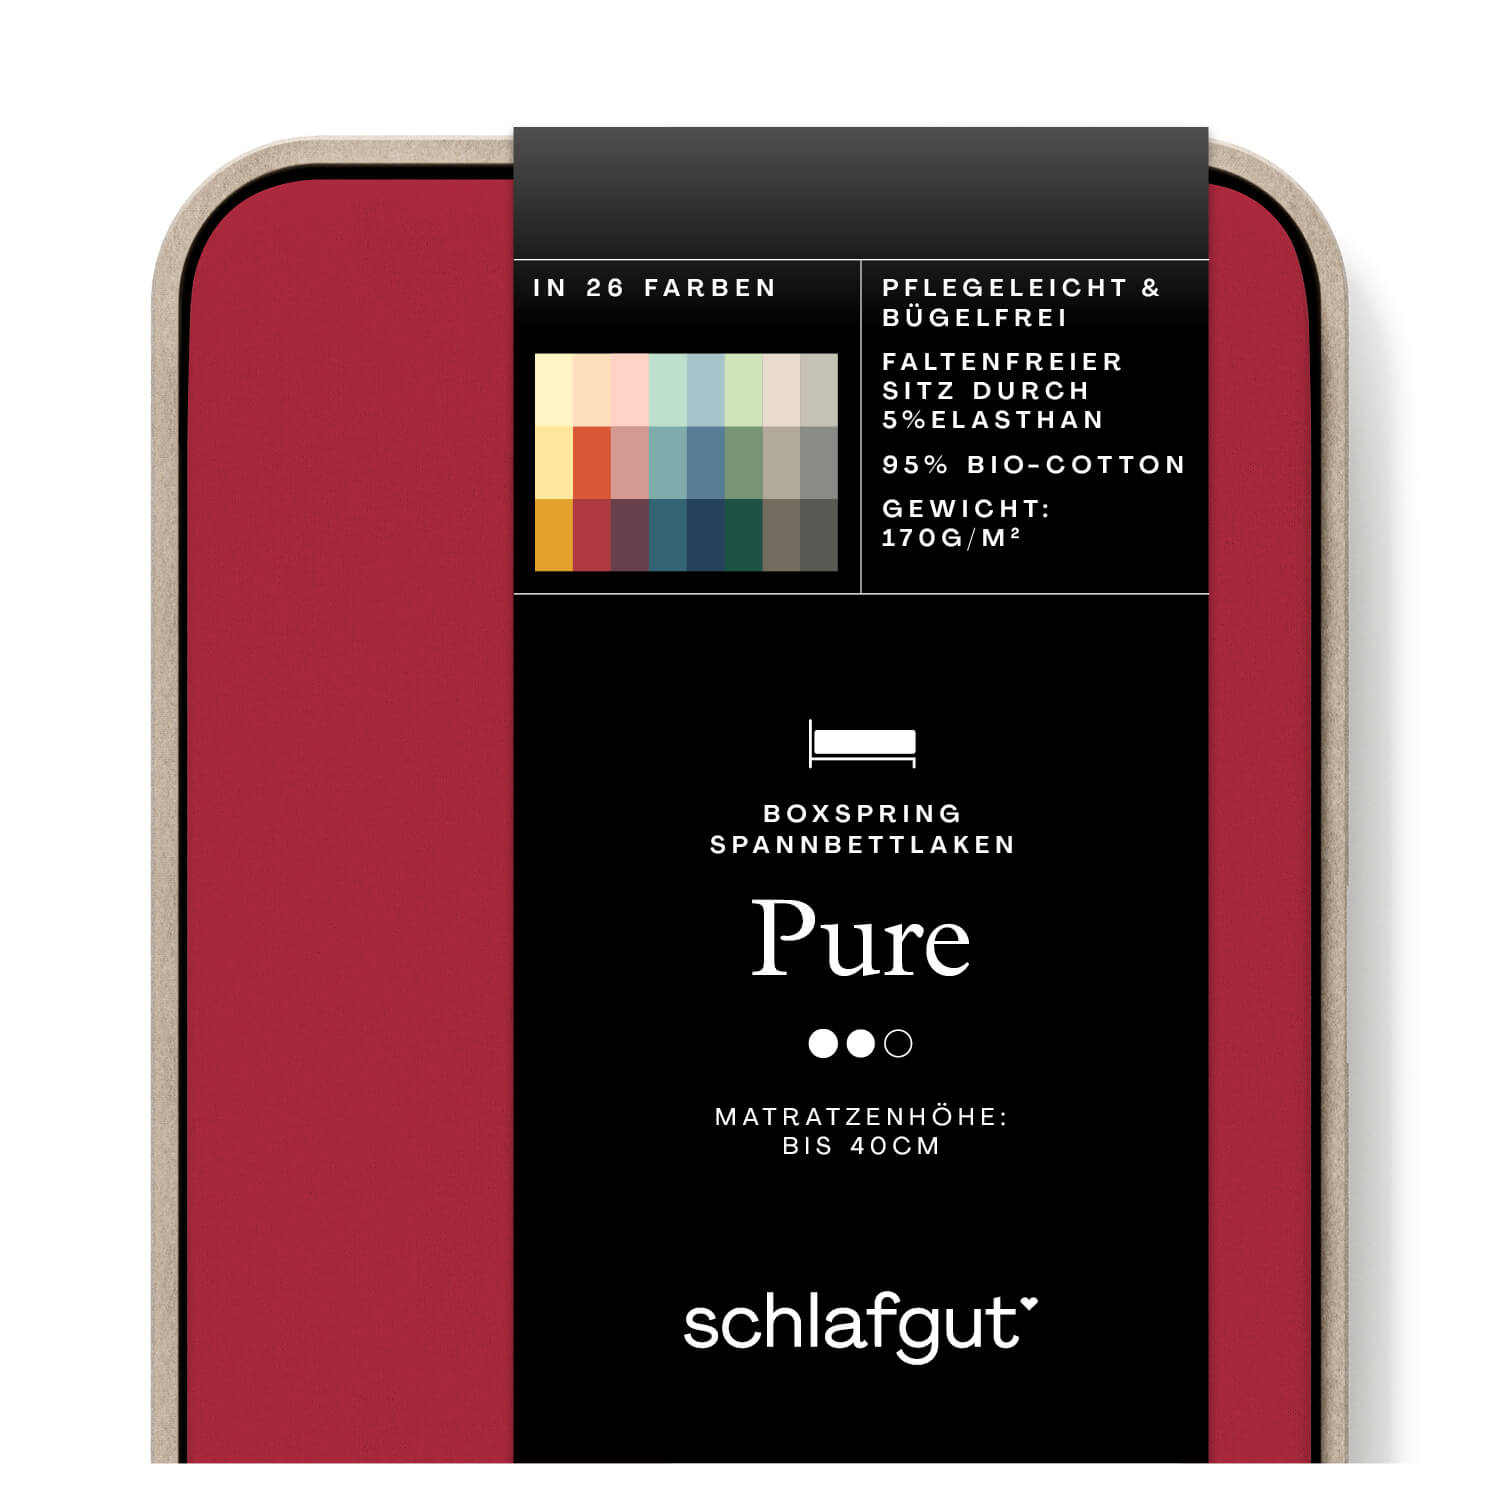 Das Produktbild vom Spannbettlaken der Reihe Pure Boxspring in Farbe red deep von Schlafgut